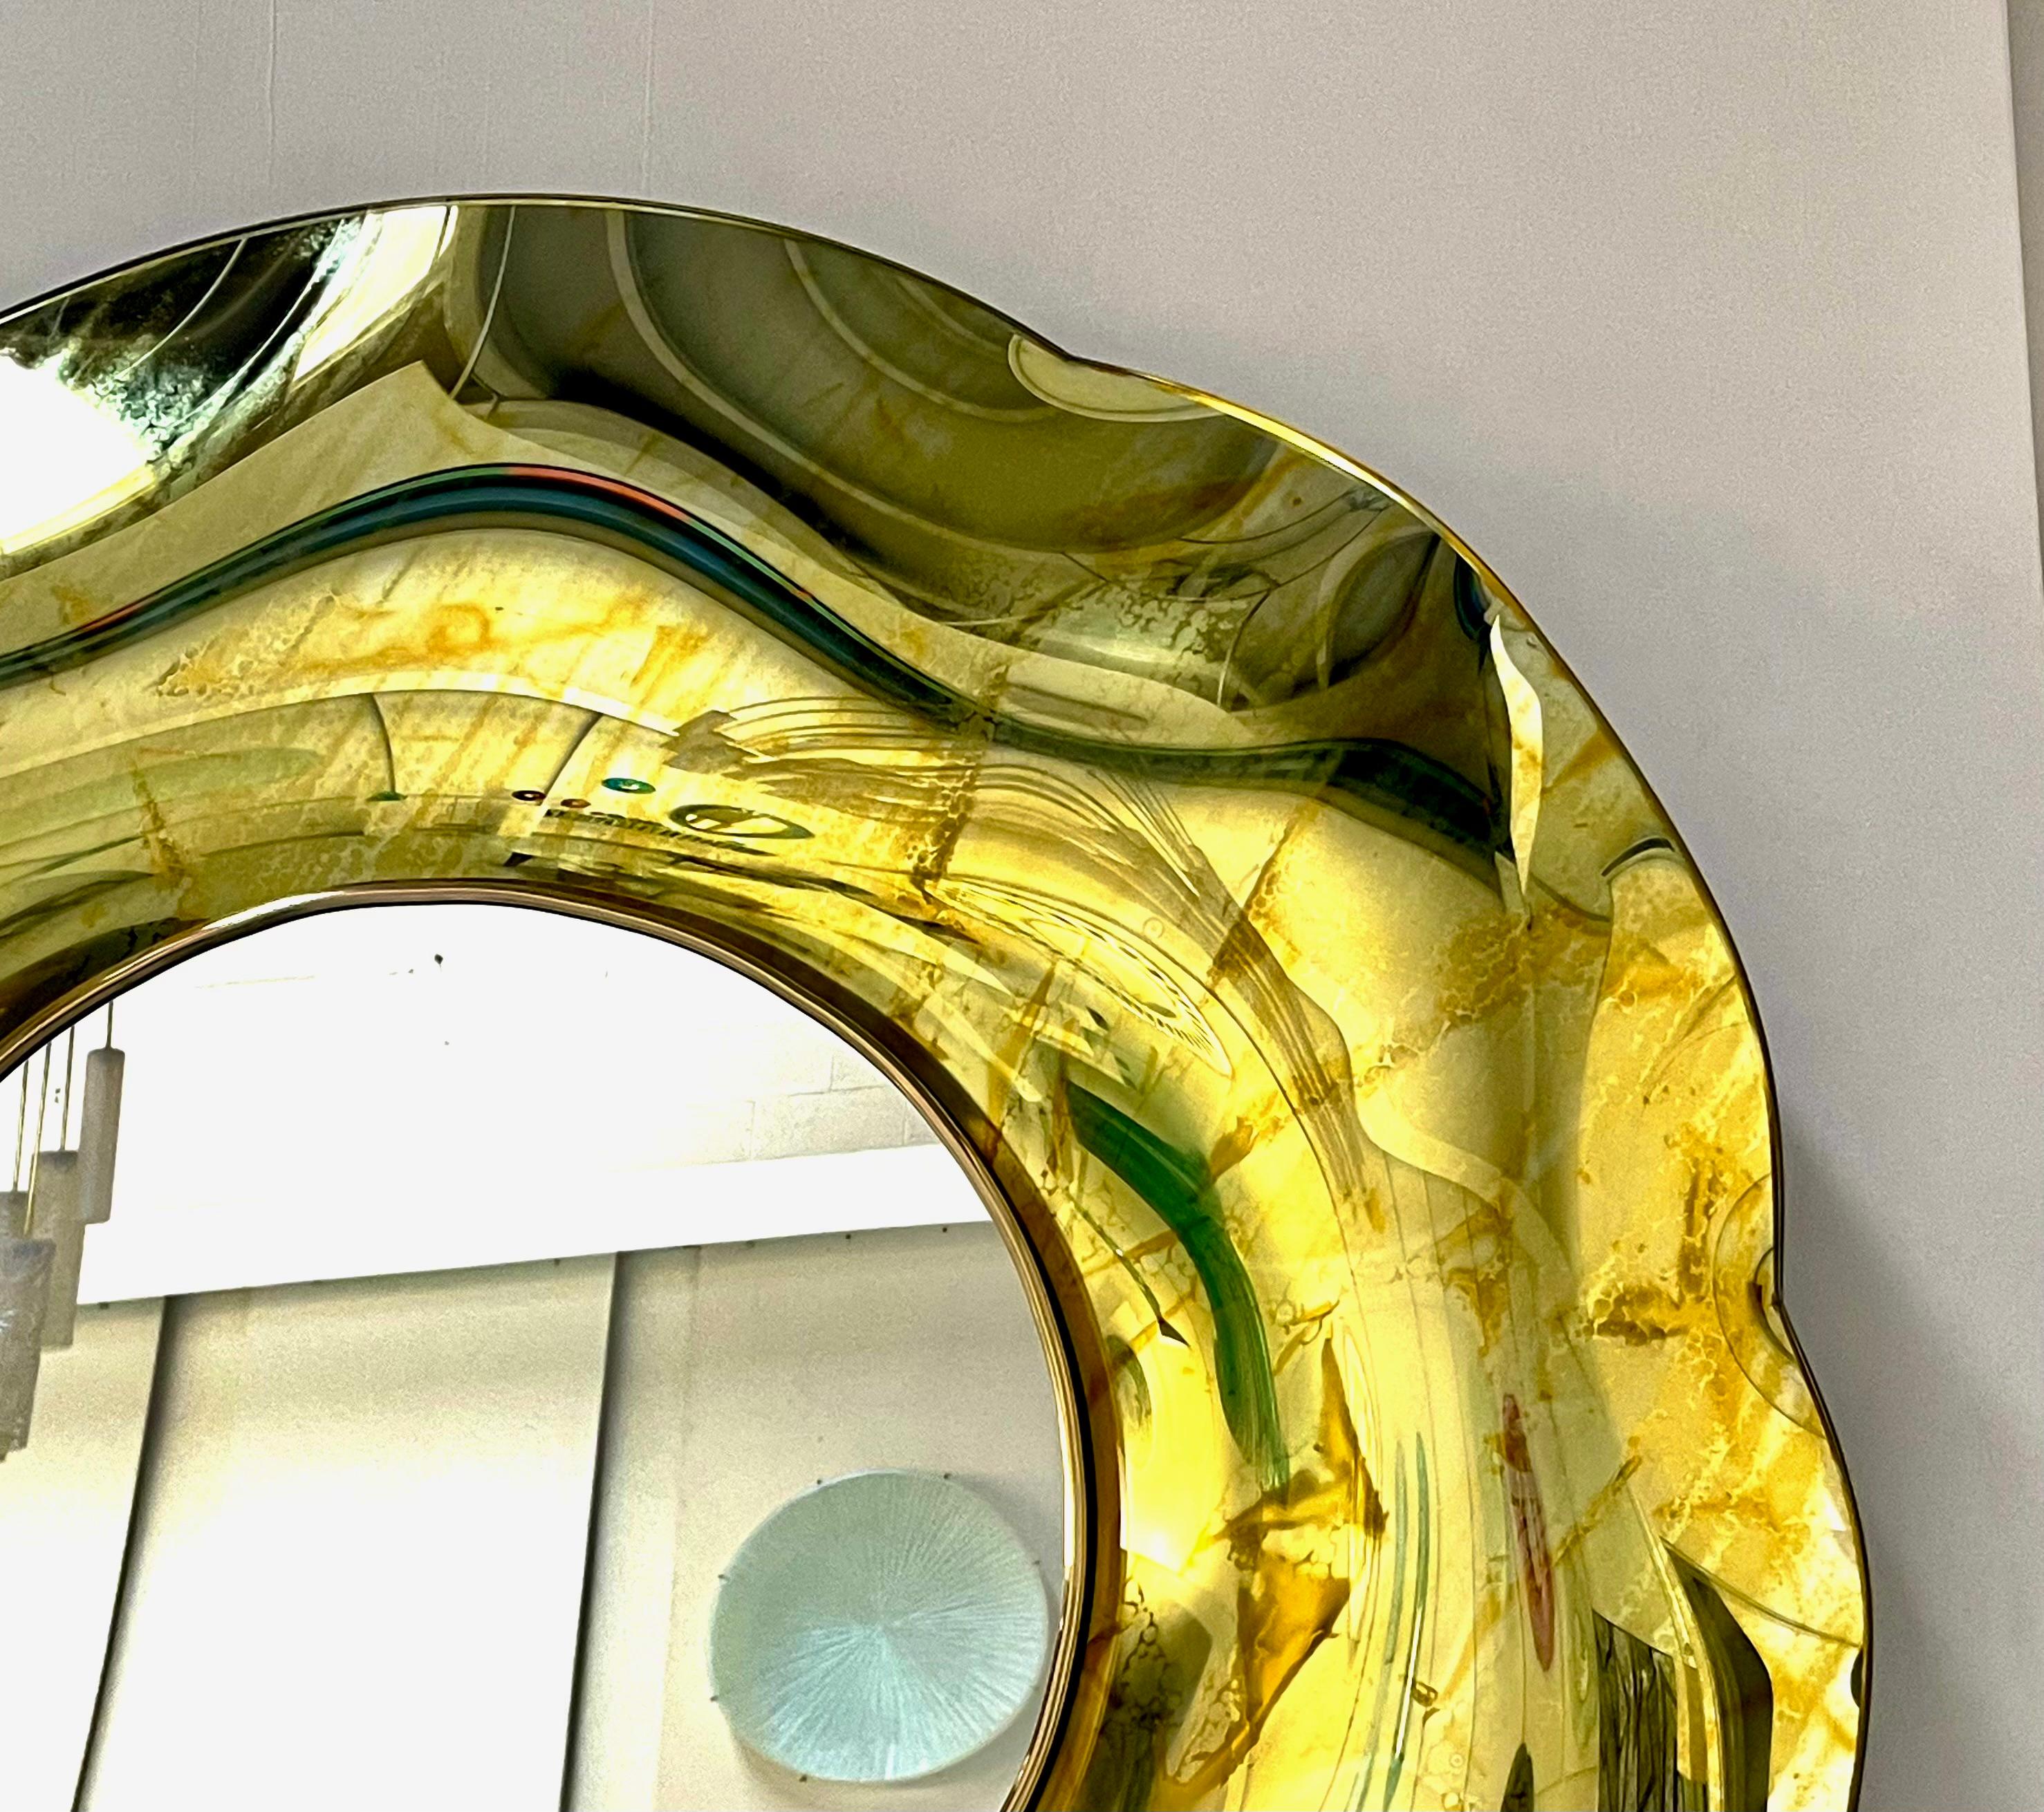 Der gewellte Spiegel 'Undulate' ist ein Kunstobjekt aus reiner Kunst und italienischem Design. 
Das Kristall wurde vom Künstler handgefertigt und fachmännisch gebogen. 
Die Trägerstruktur besteht aus Holz und Messing. 
Seine runde Form und seine